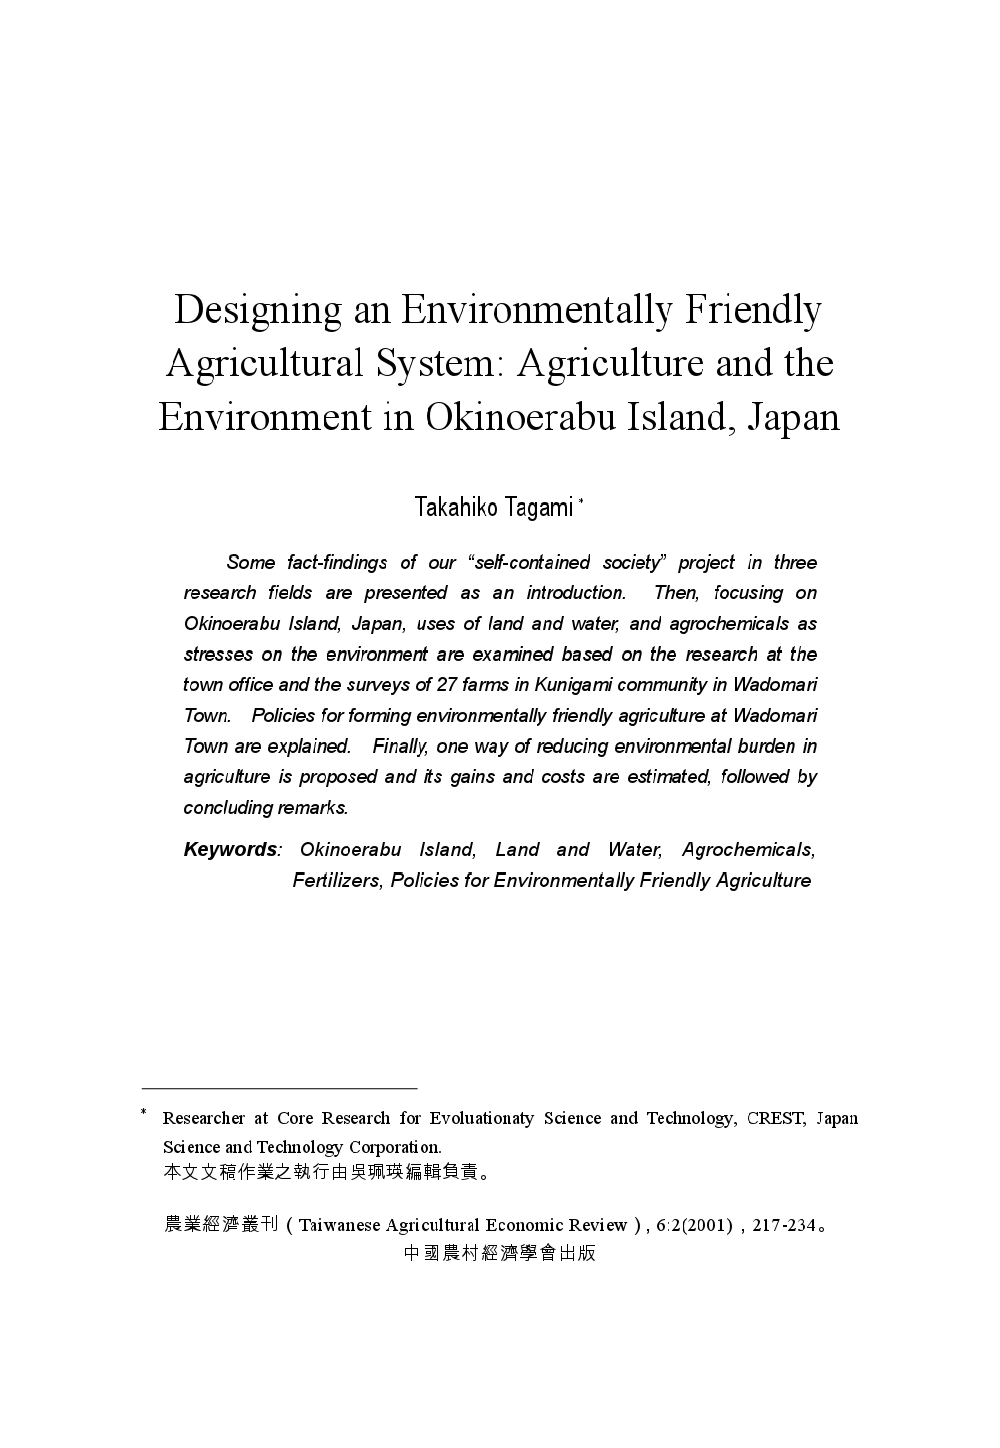 一個與環境互助之農業系統的設計_日本的Okinoerabu島之農業與環境.jpg